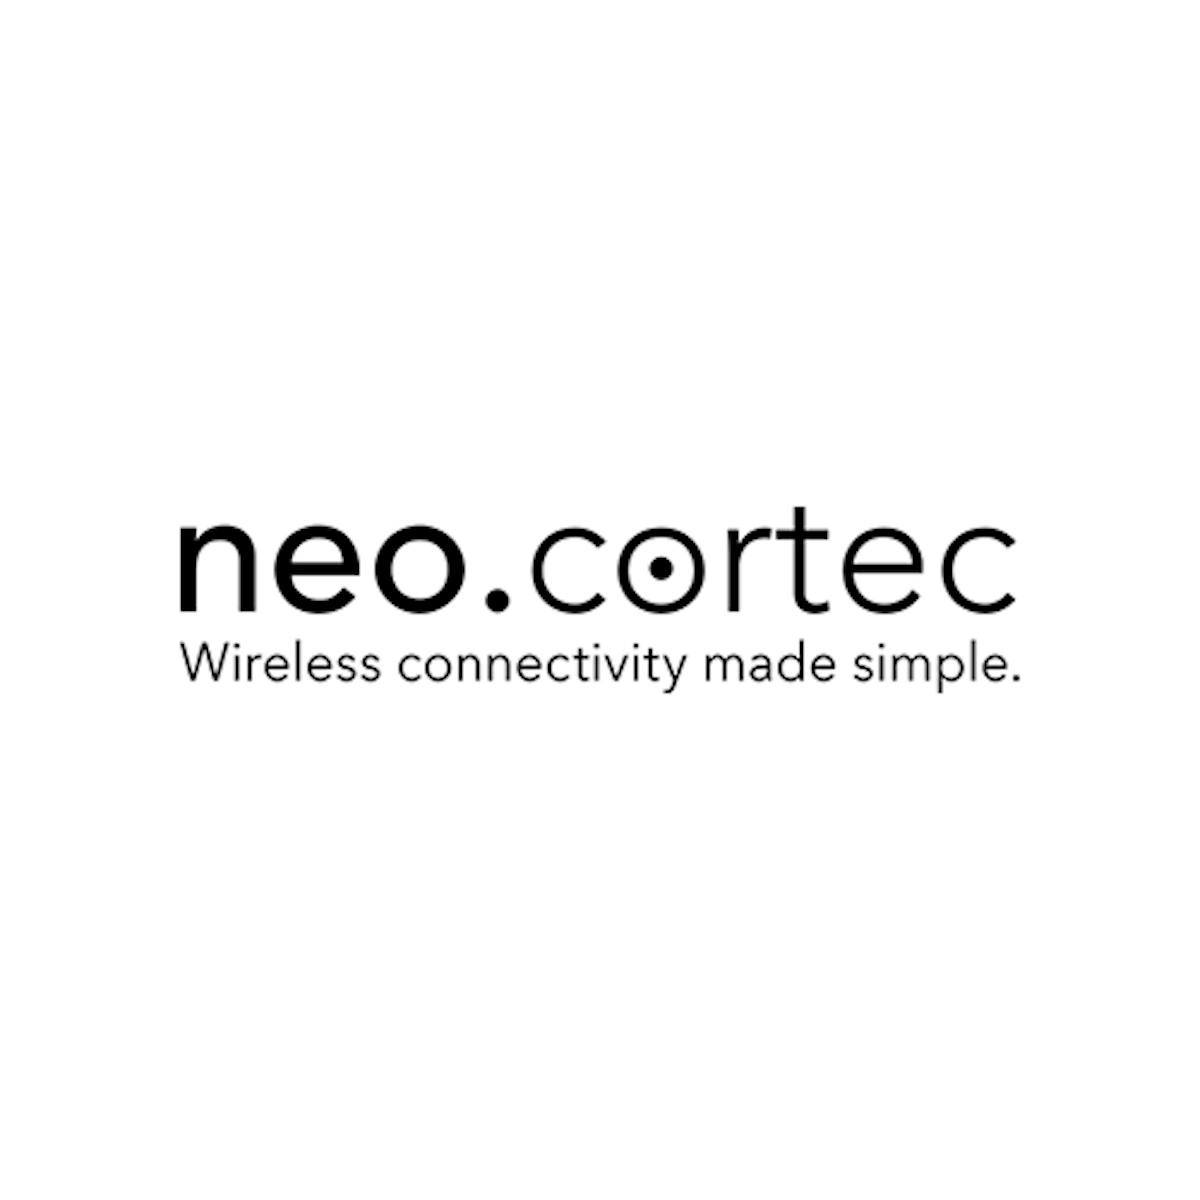 Neocortec